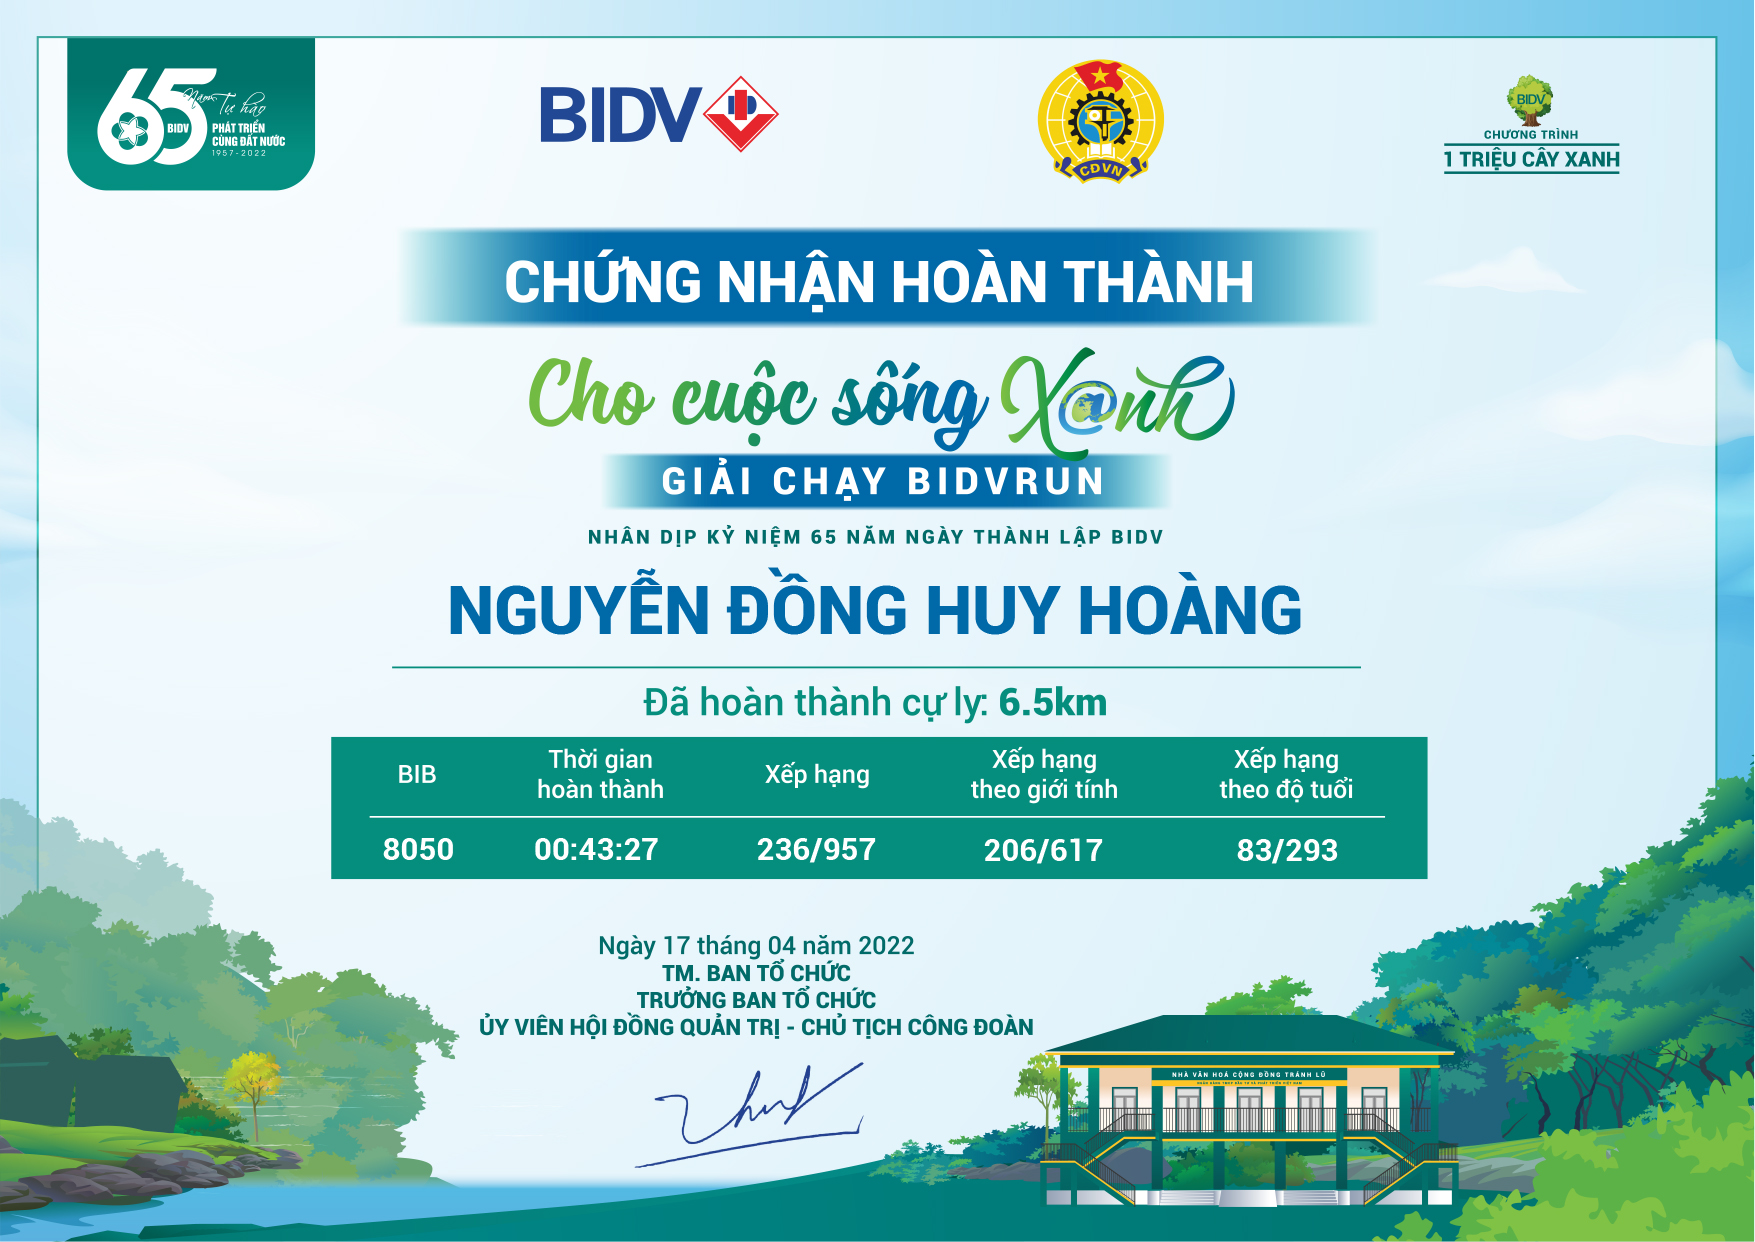 8050 - Nguyễn Đồng Huy Hoàng